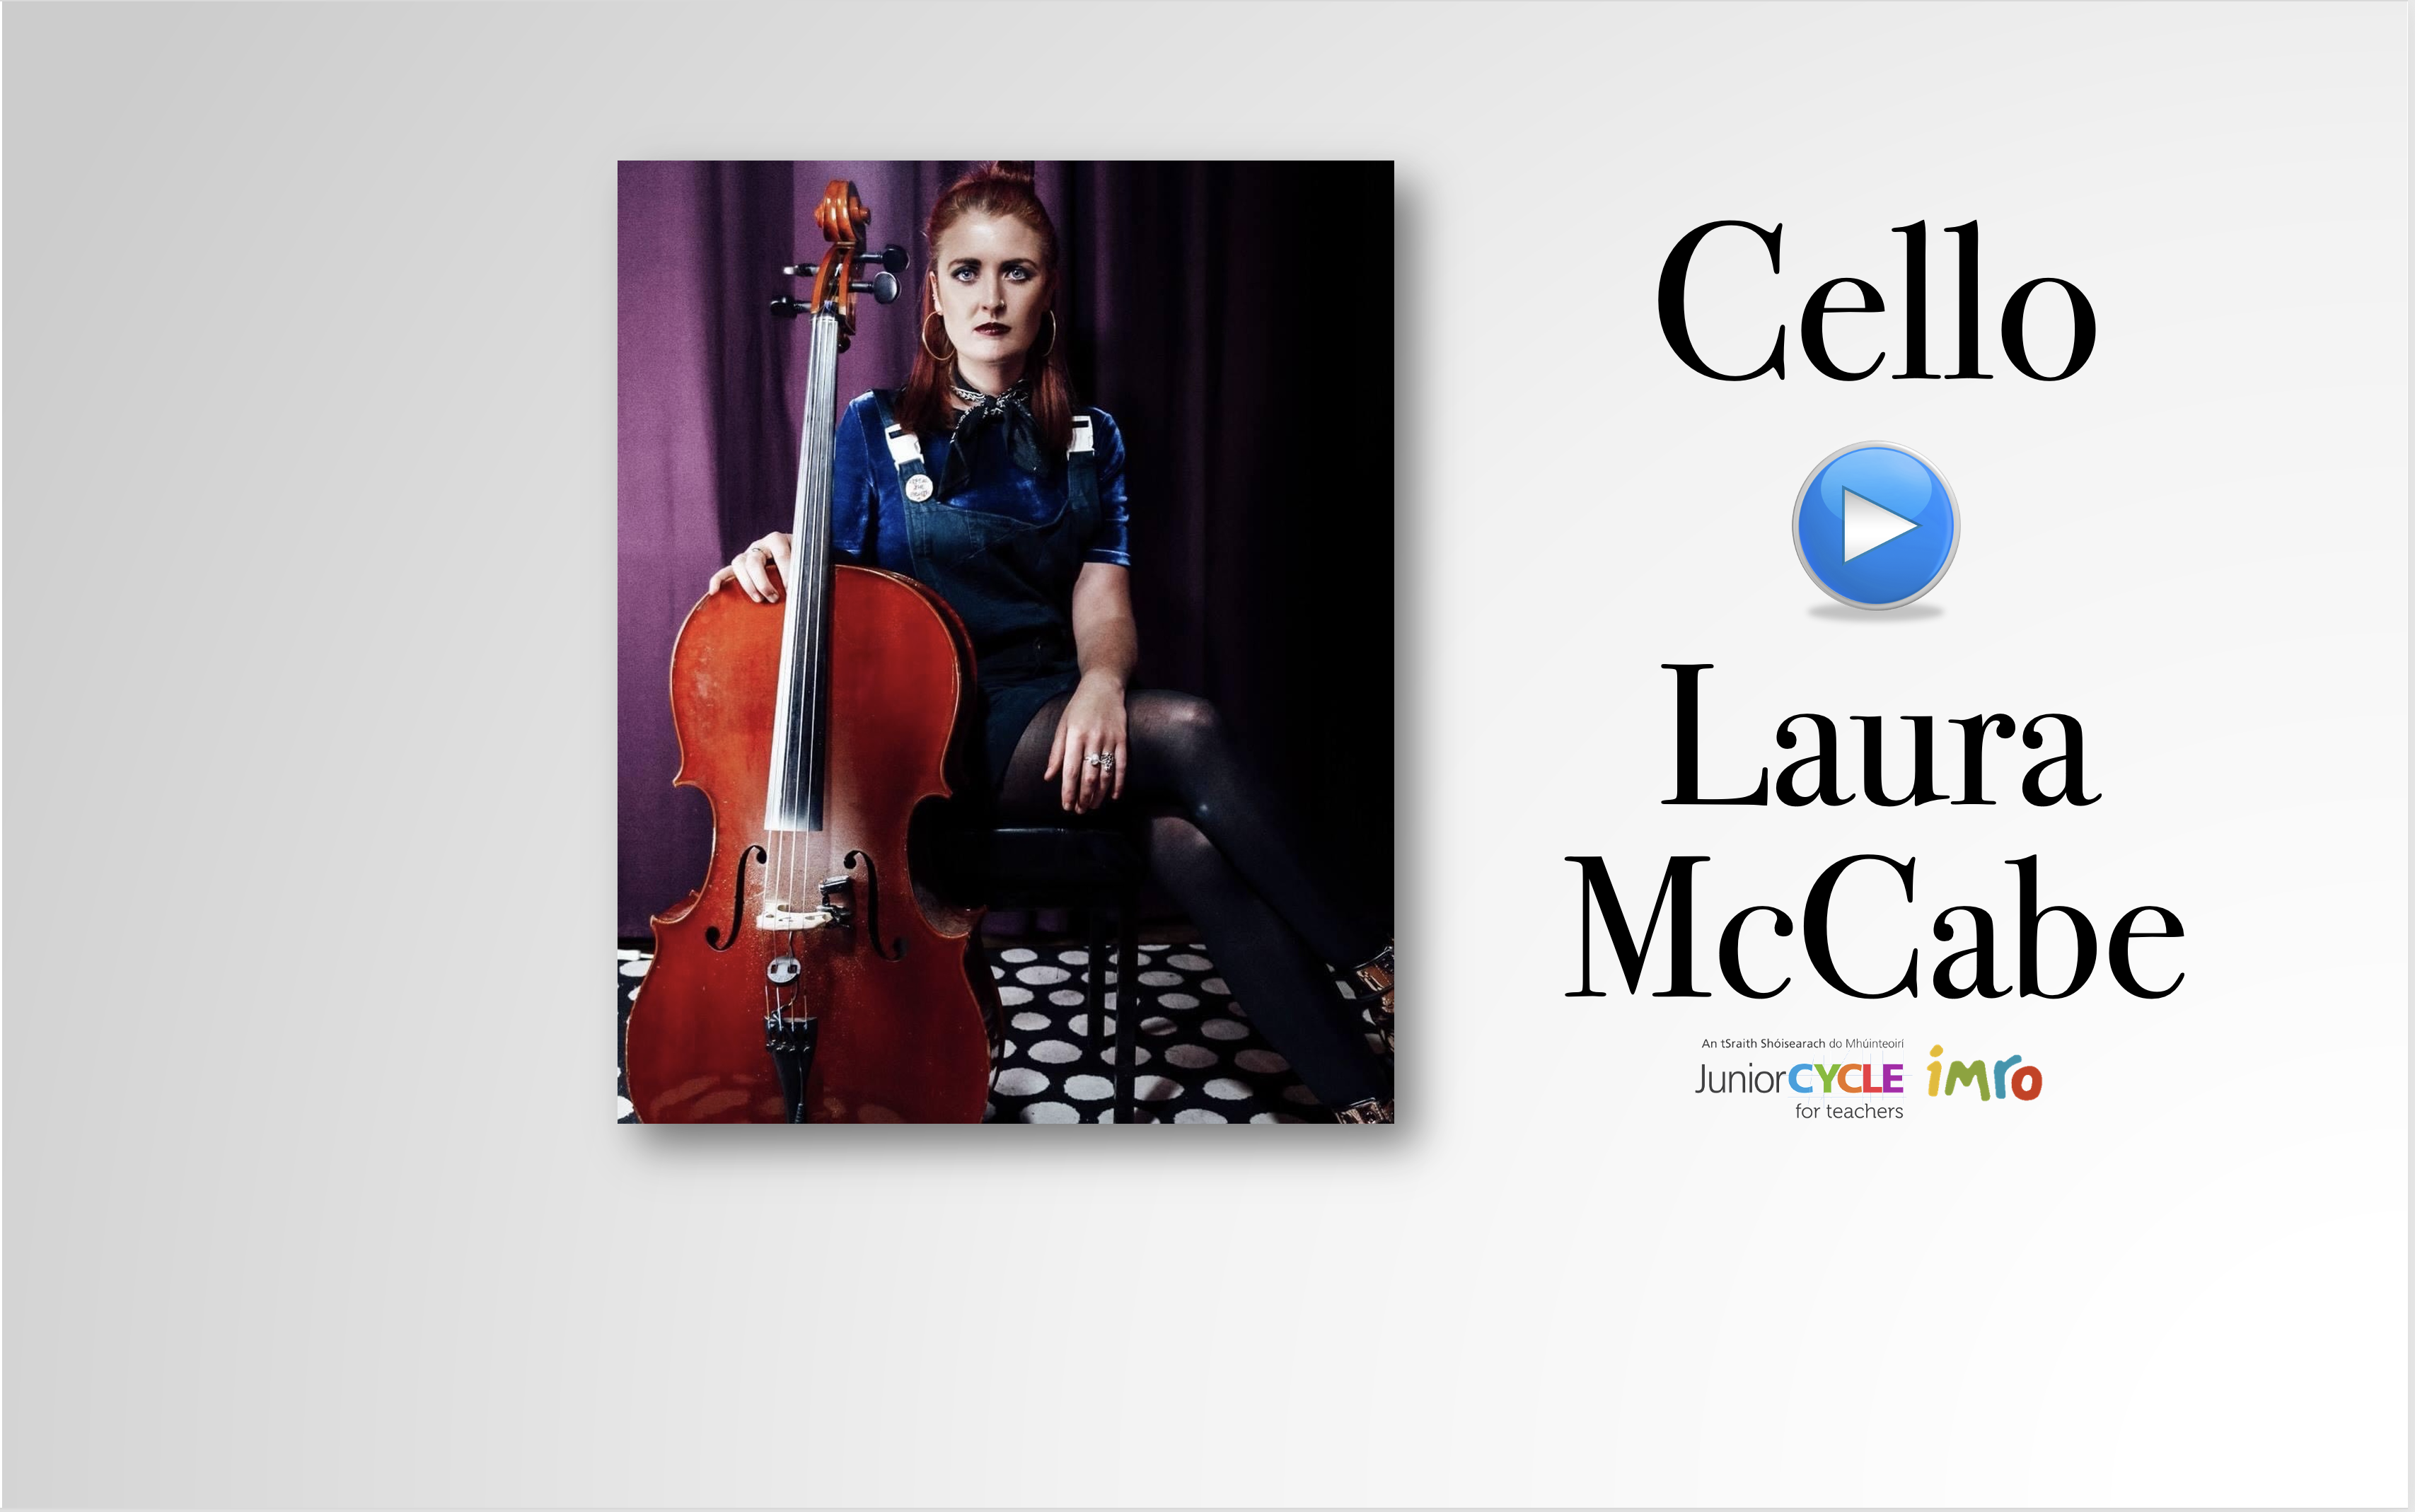 Meet the Cello 2